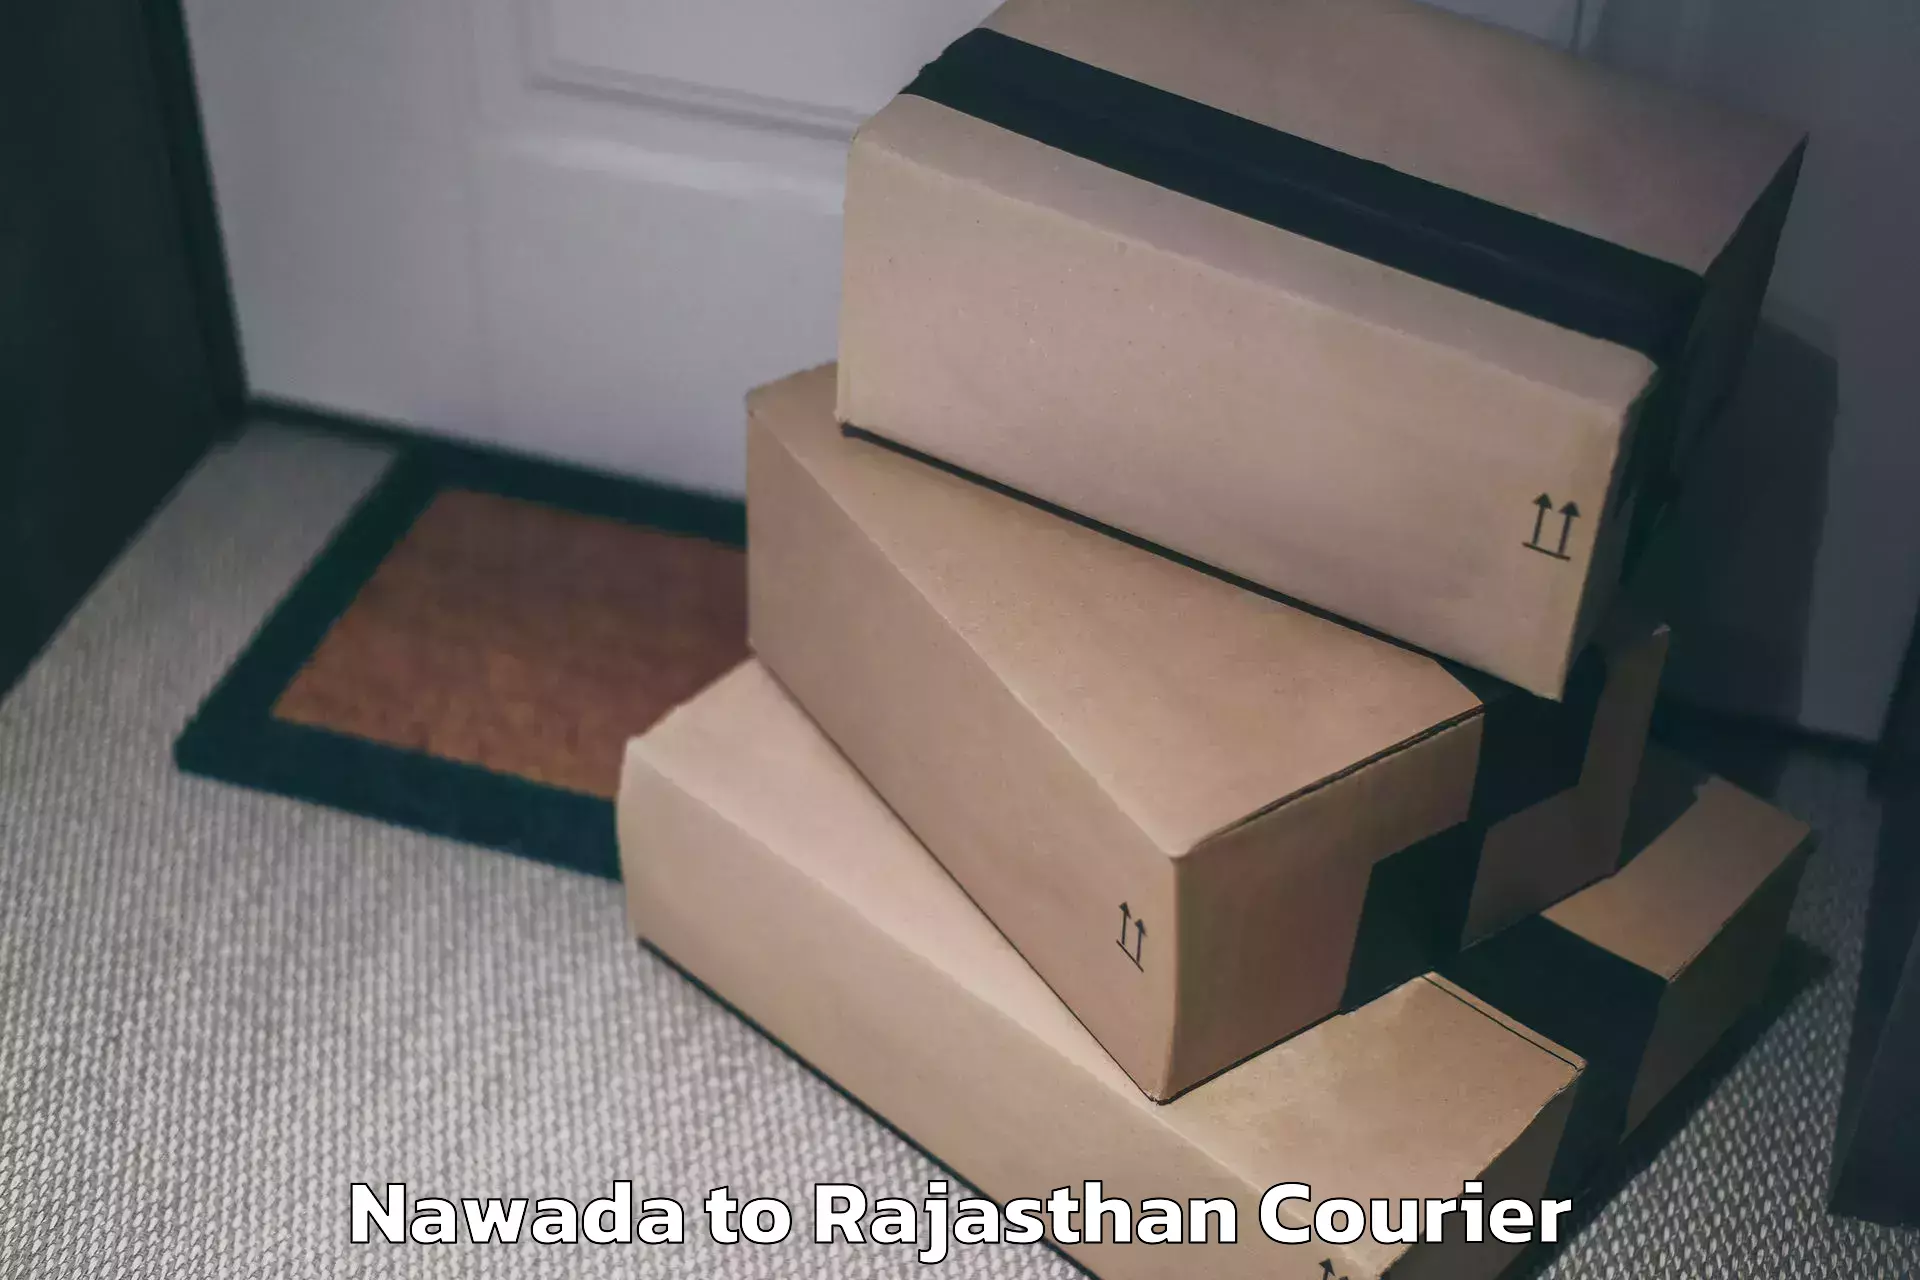 Luggage shipment specialists Nawada to Sojat